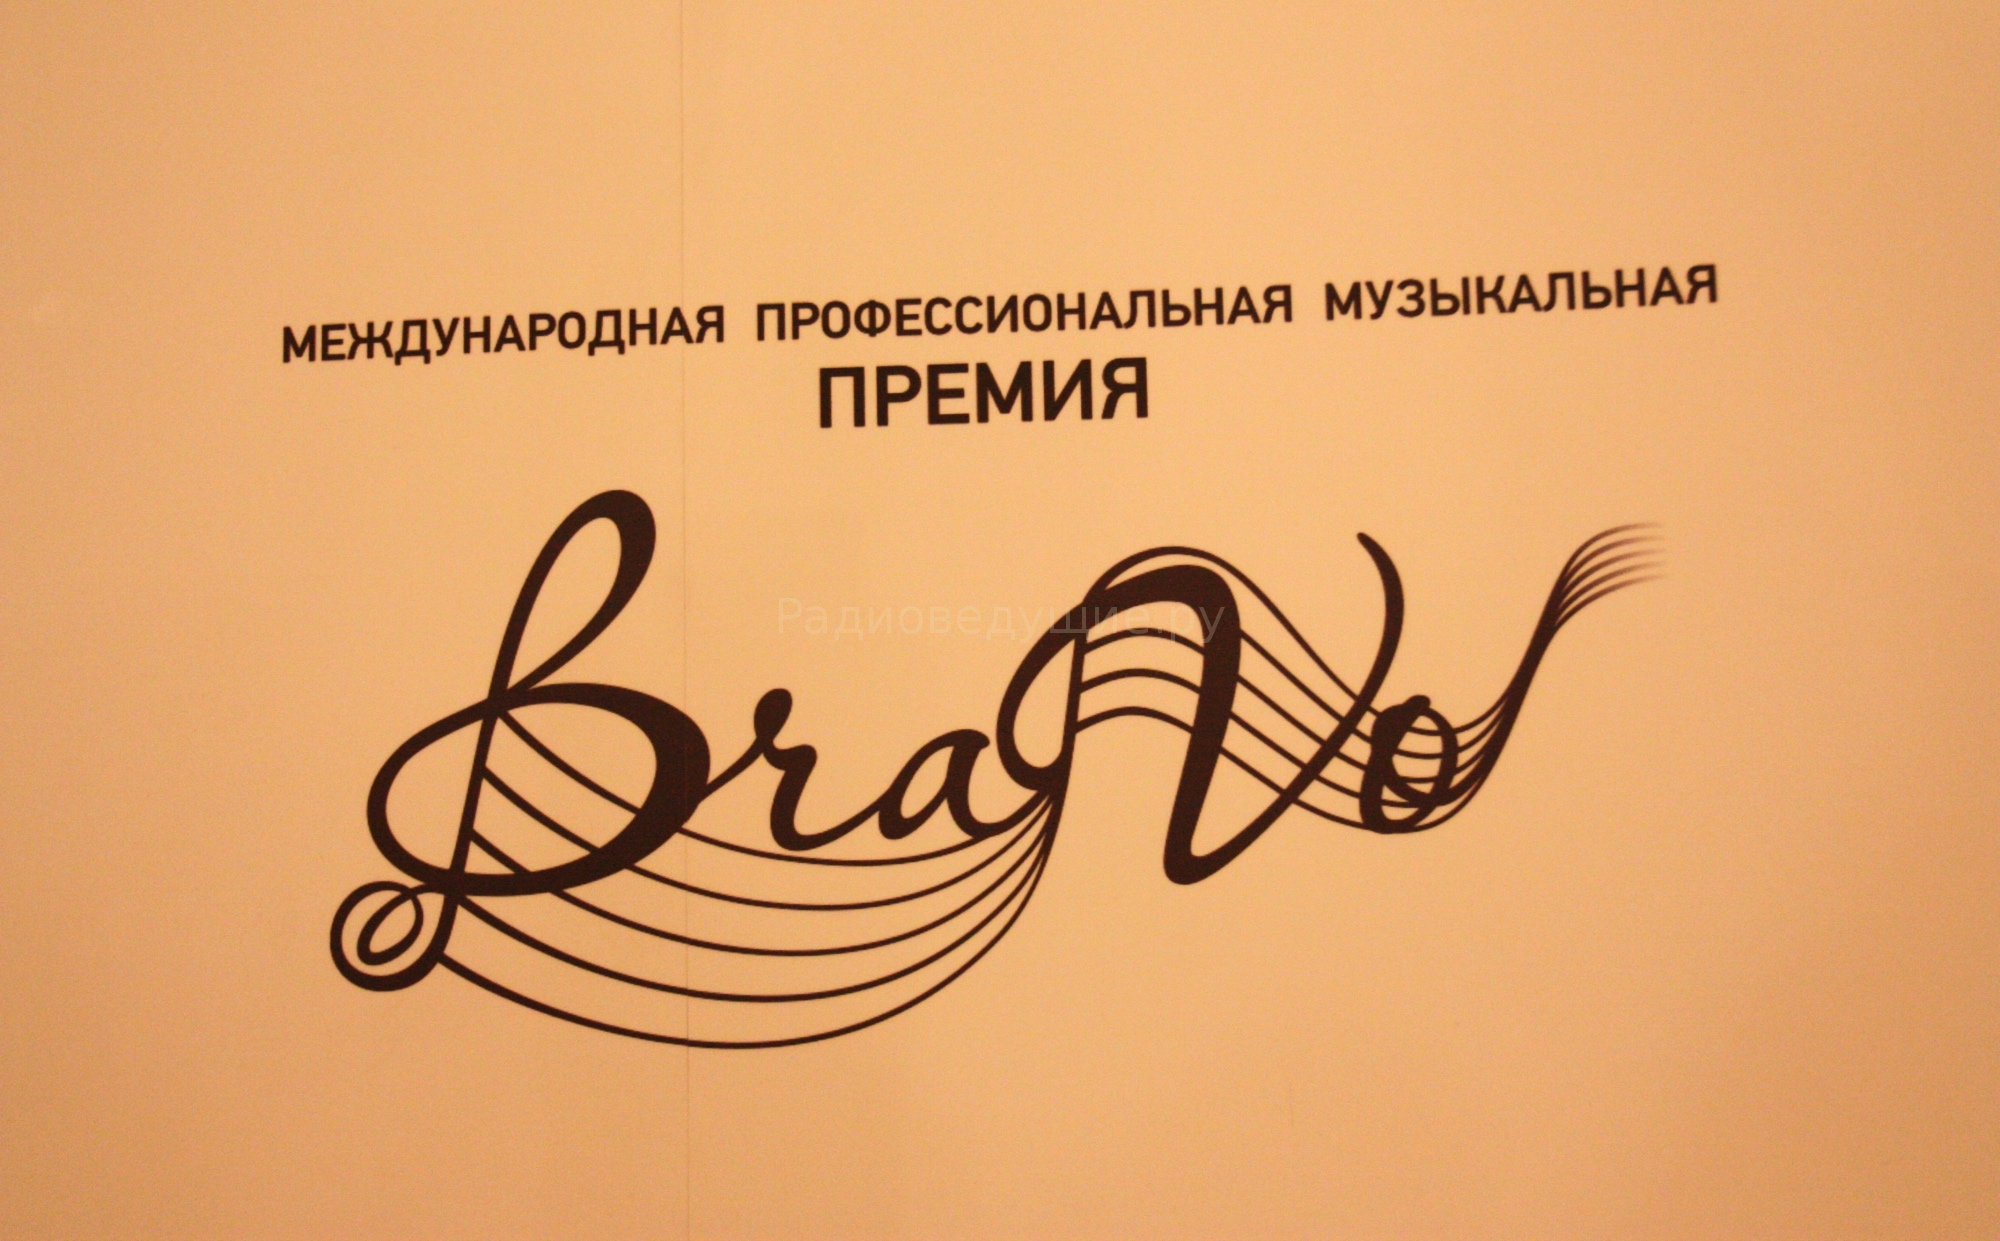 На фото - логотип Международной профессиональной музыкальной Премии BraVo